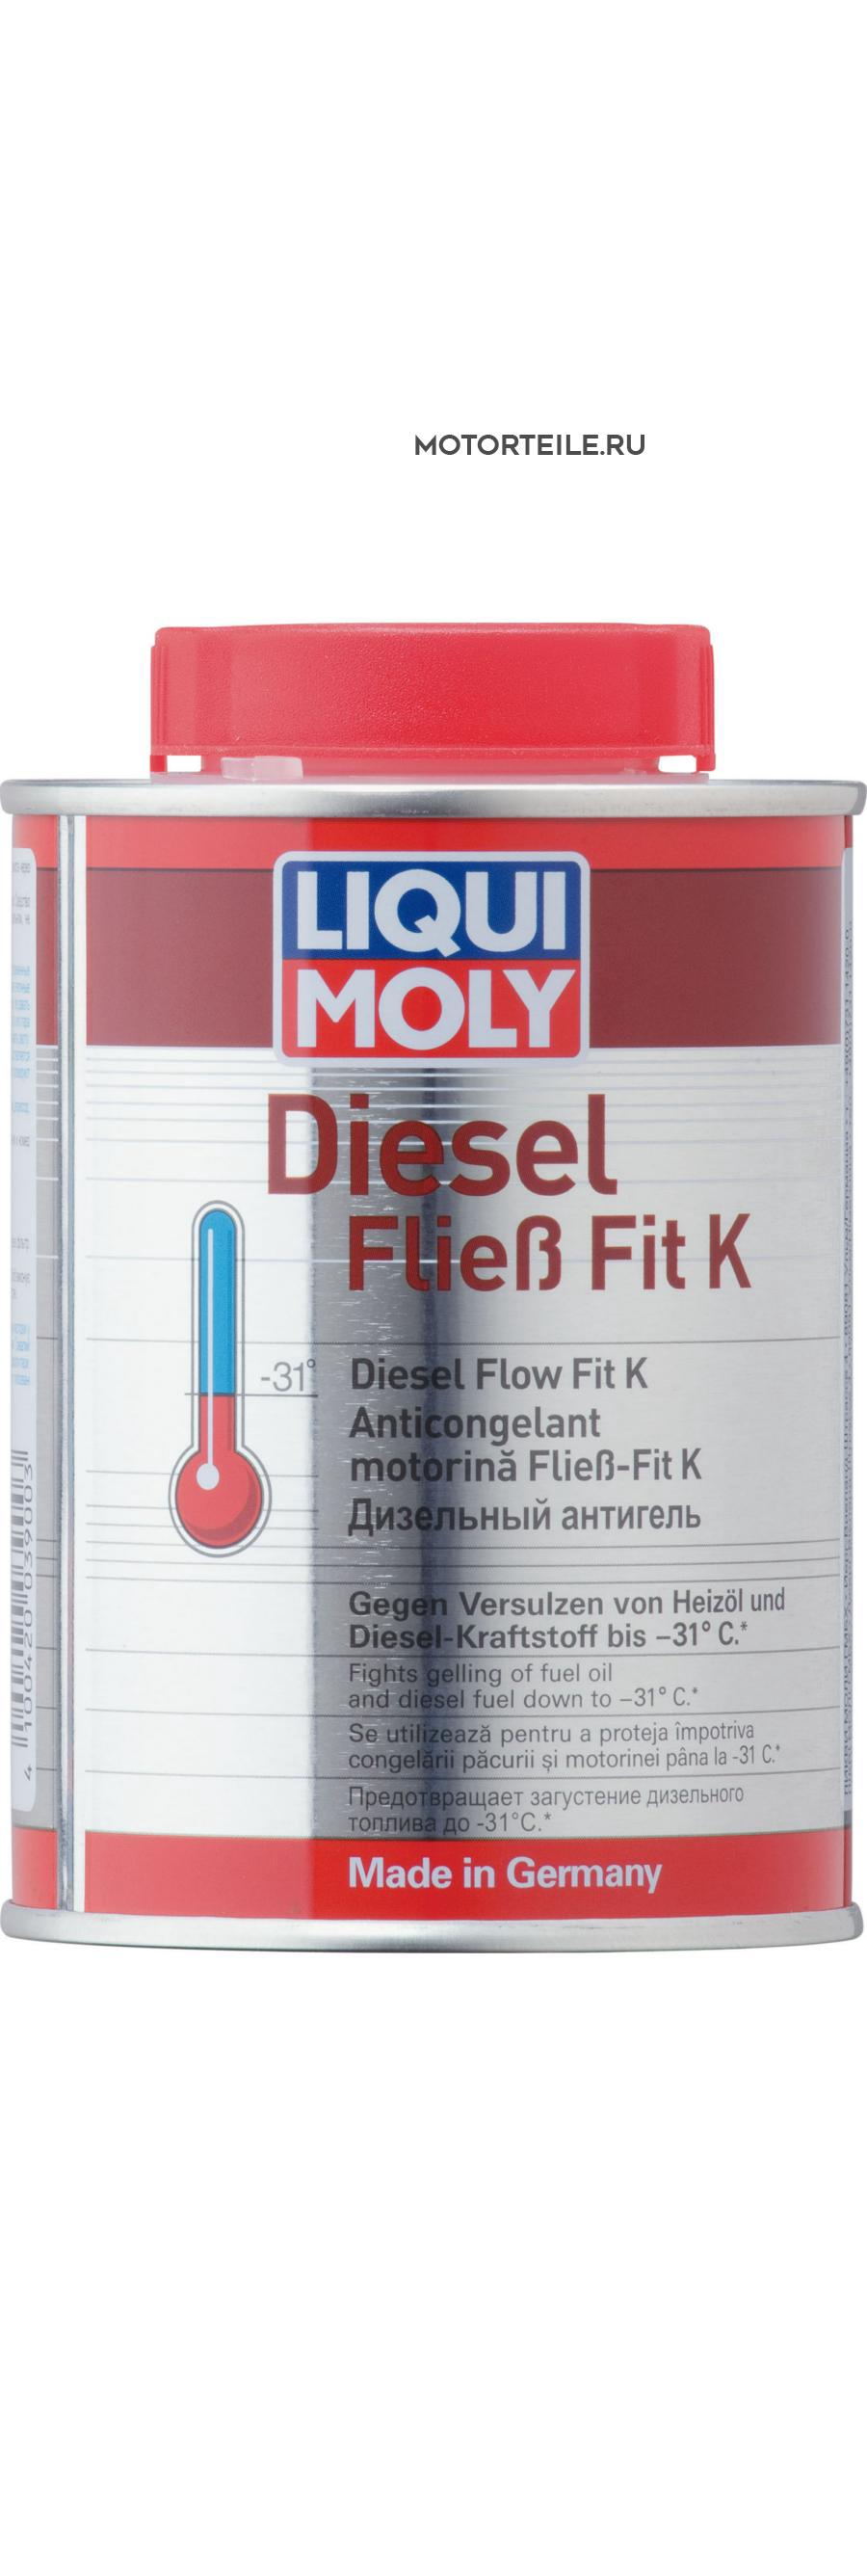 Антигель дизельный концентрат Diesel Fliess-Fit K (0,25л)